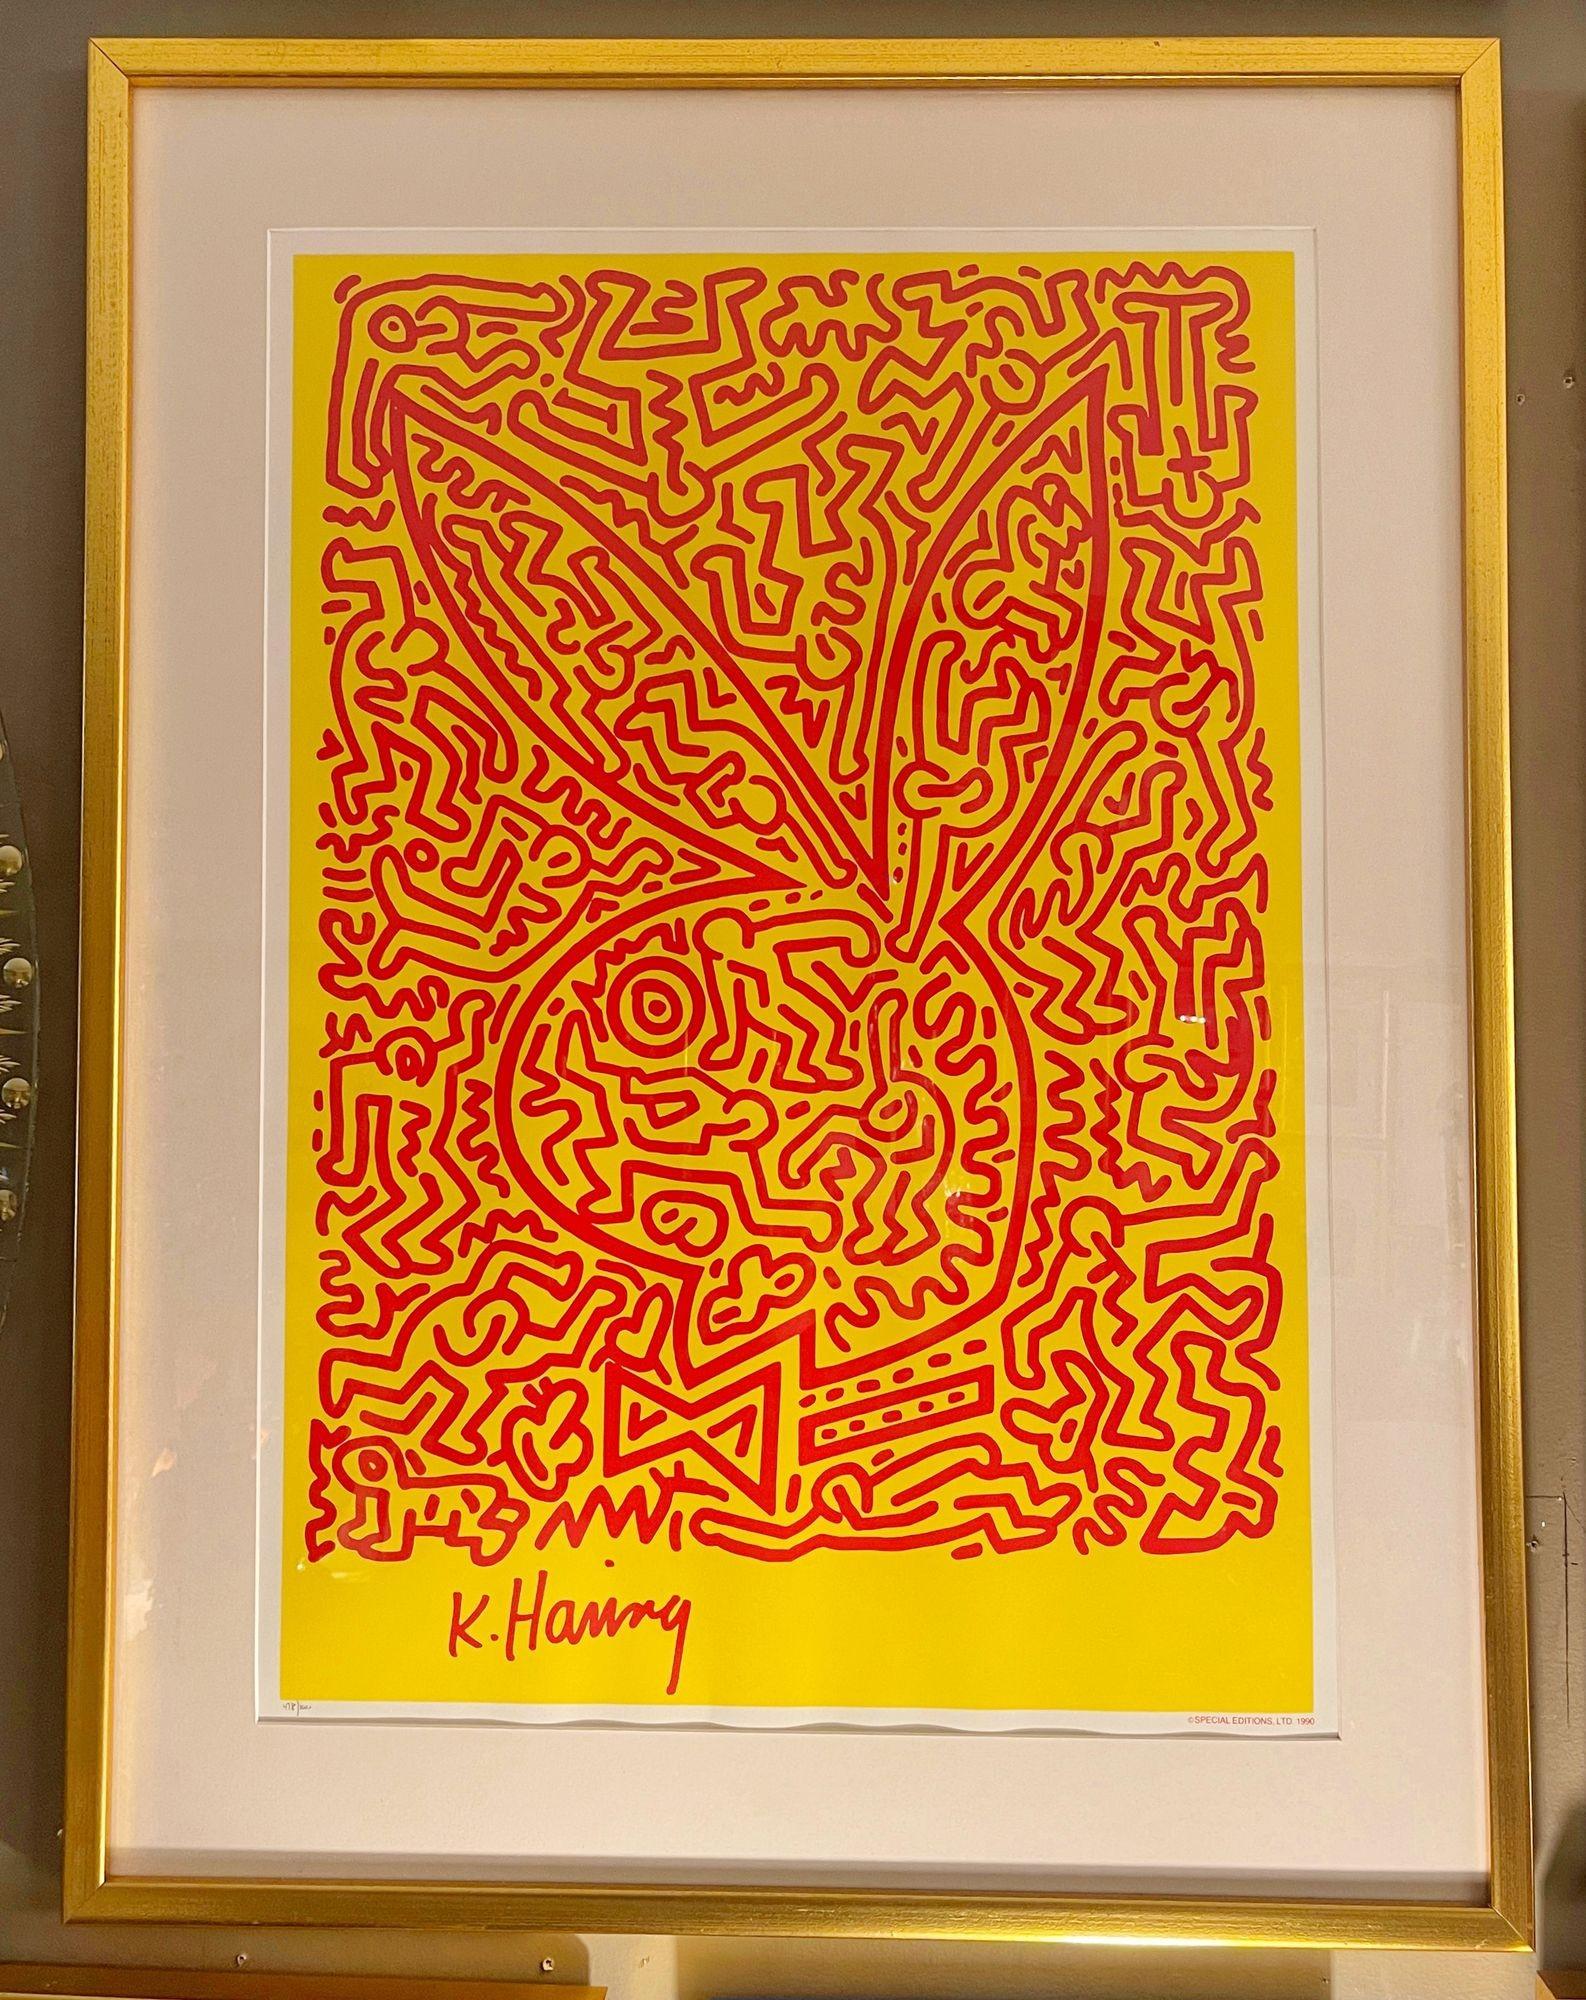 Keith Haring (American, 1958-1990) 'Playboy Bunny No. 2' Serigraph.
Special editions, LTD. 1990 - 478/1000